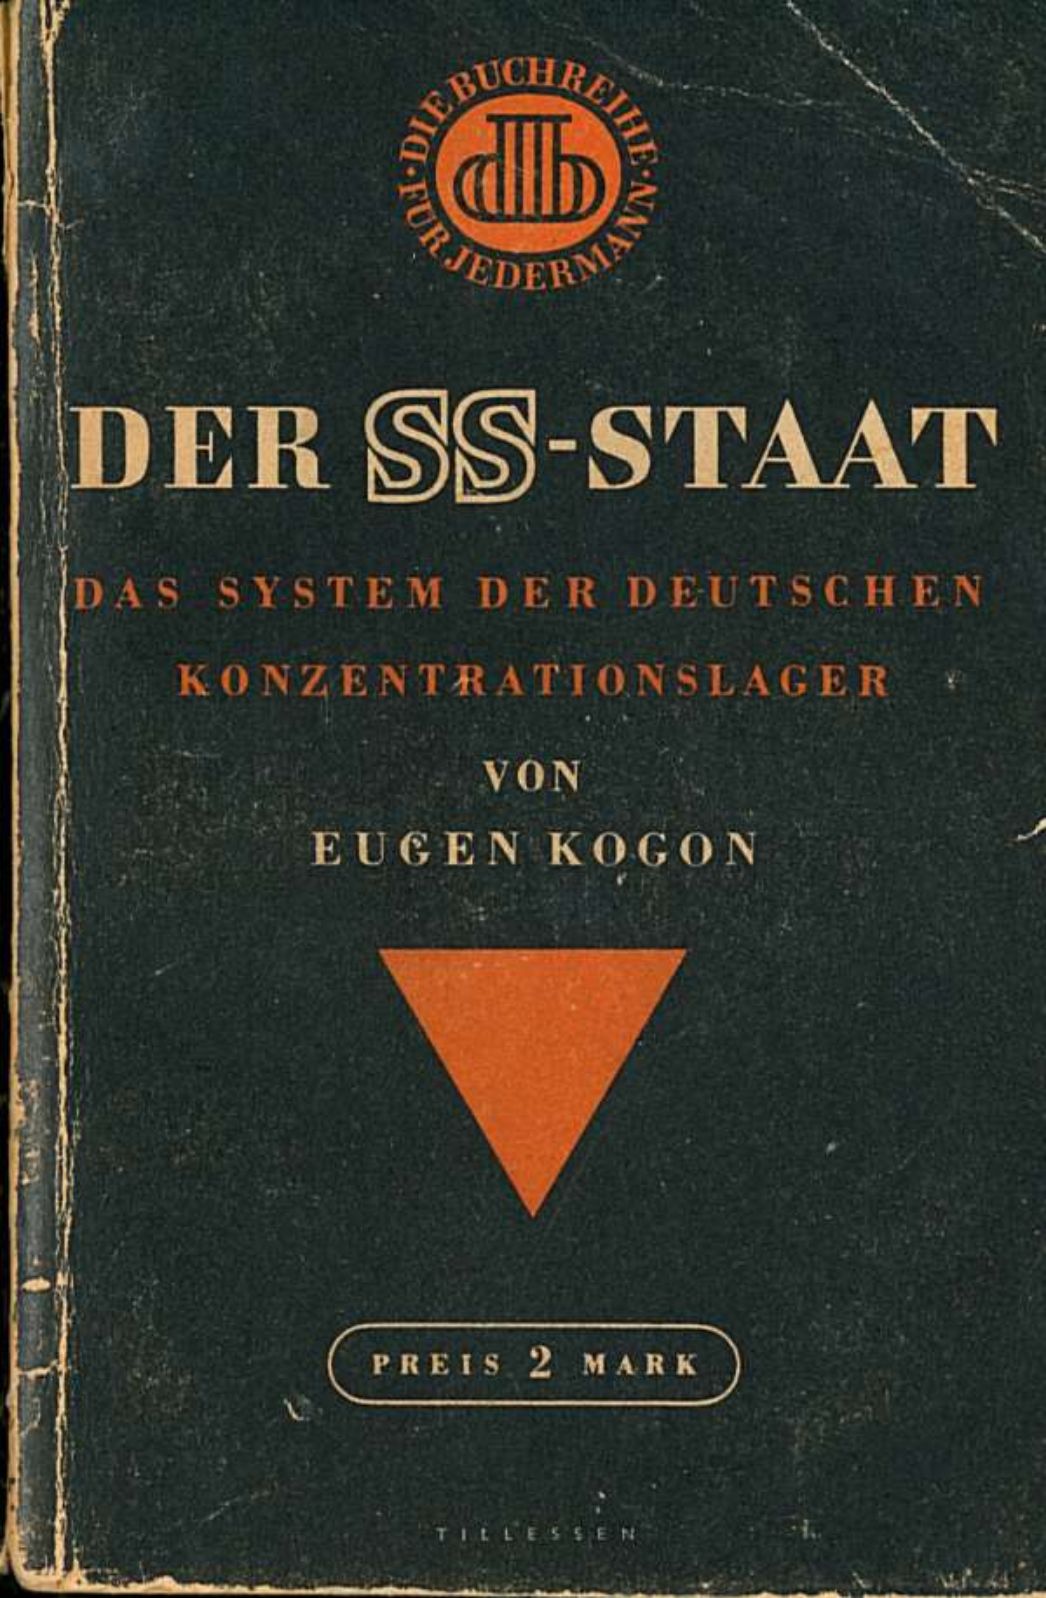 Bucheinband von Eugen Krogons "Der SS-Staat - Das System der Deutschen Konzentrationslager" Der Einband ist schwarz. Oben ist das Orange Siegel "Die Buchreihe für Jedermann" zu erkennen. Unter dem Titel ist ein oranges gleichschenkliges Dreieck plaziert. Darunter ist der Preis von 2 Mark zu lesen.